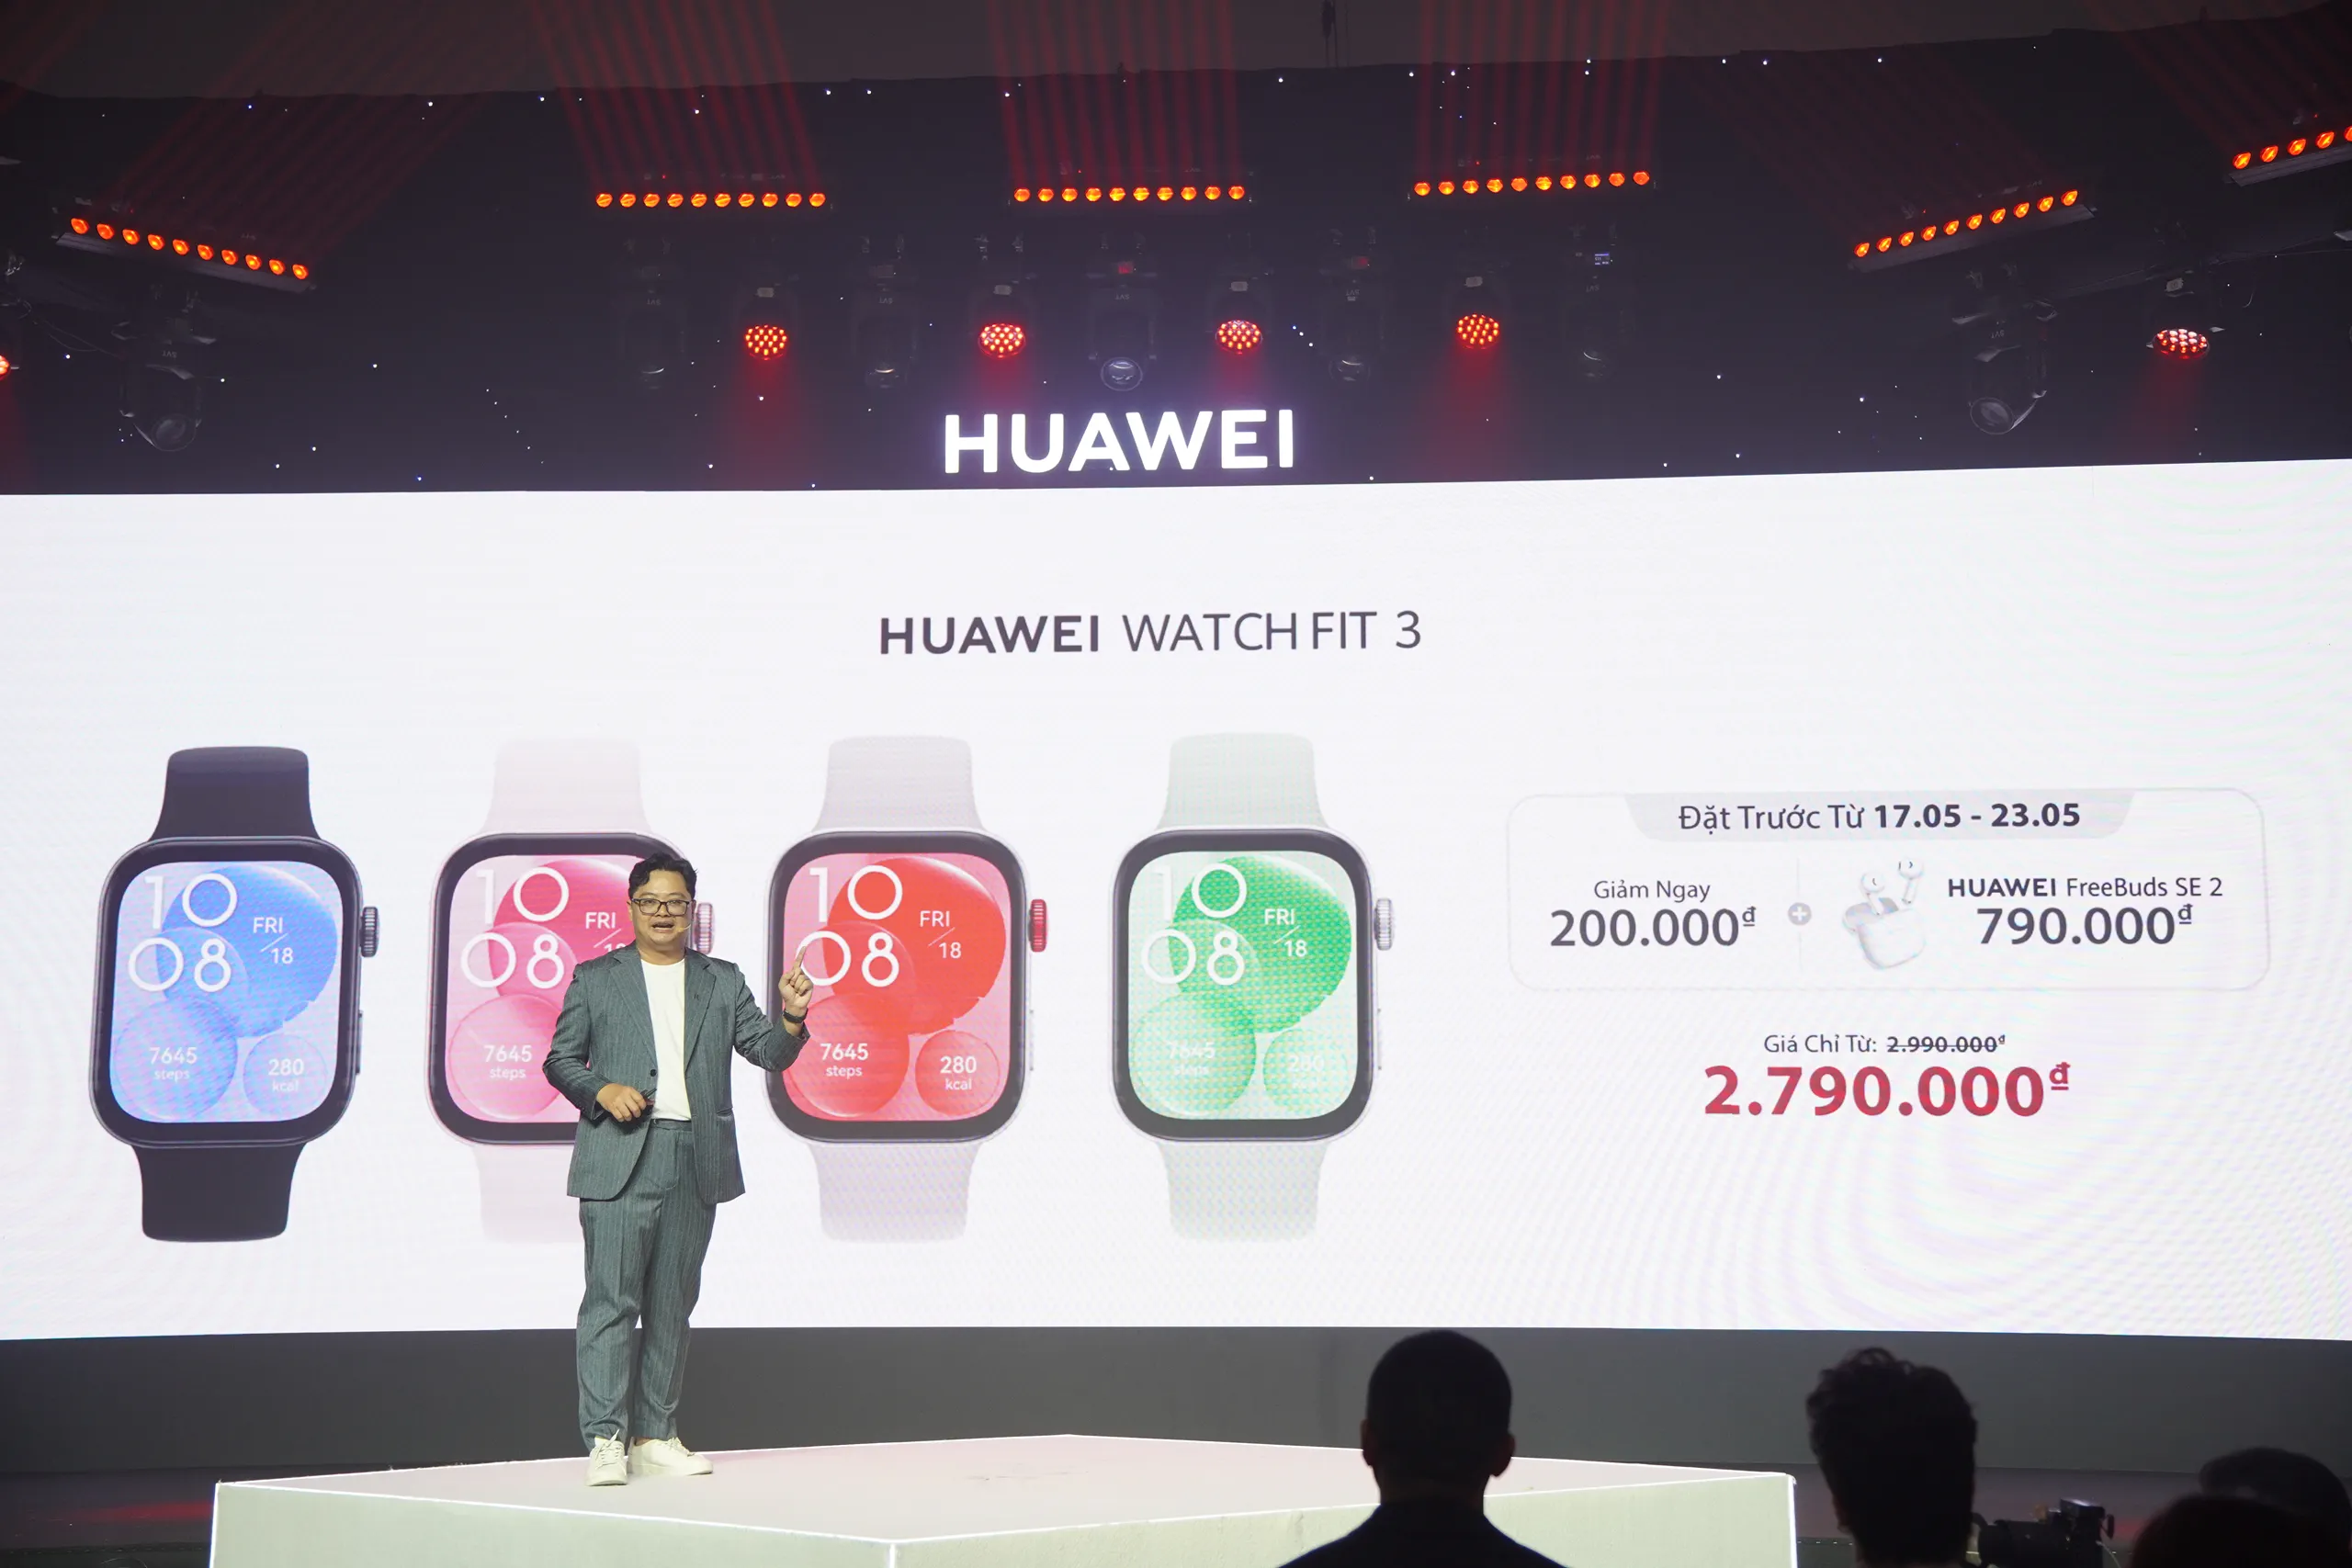 Huawei Watch Fit 3 ra mắt: Thiết kế thời trang, tính năng mạnh mẽ, giá thành hợp lý